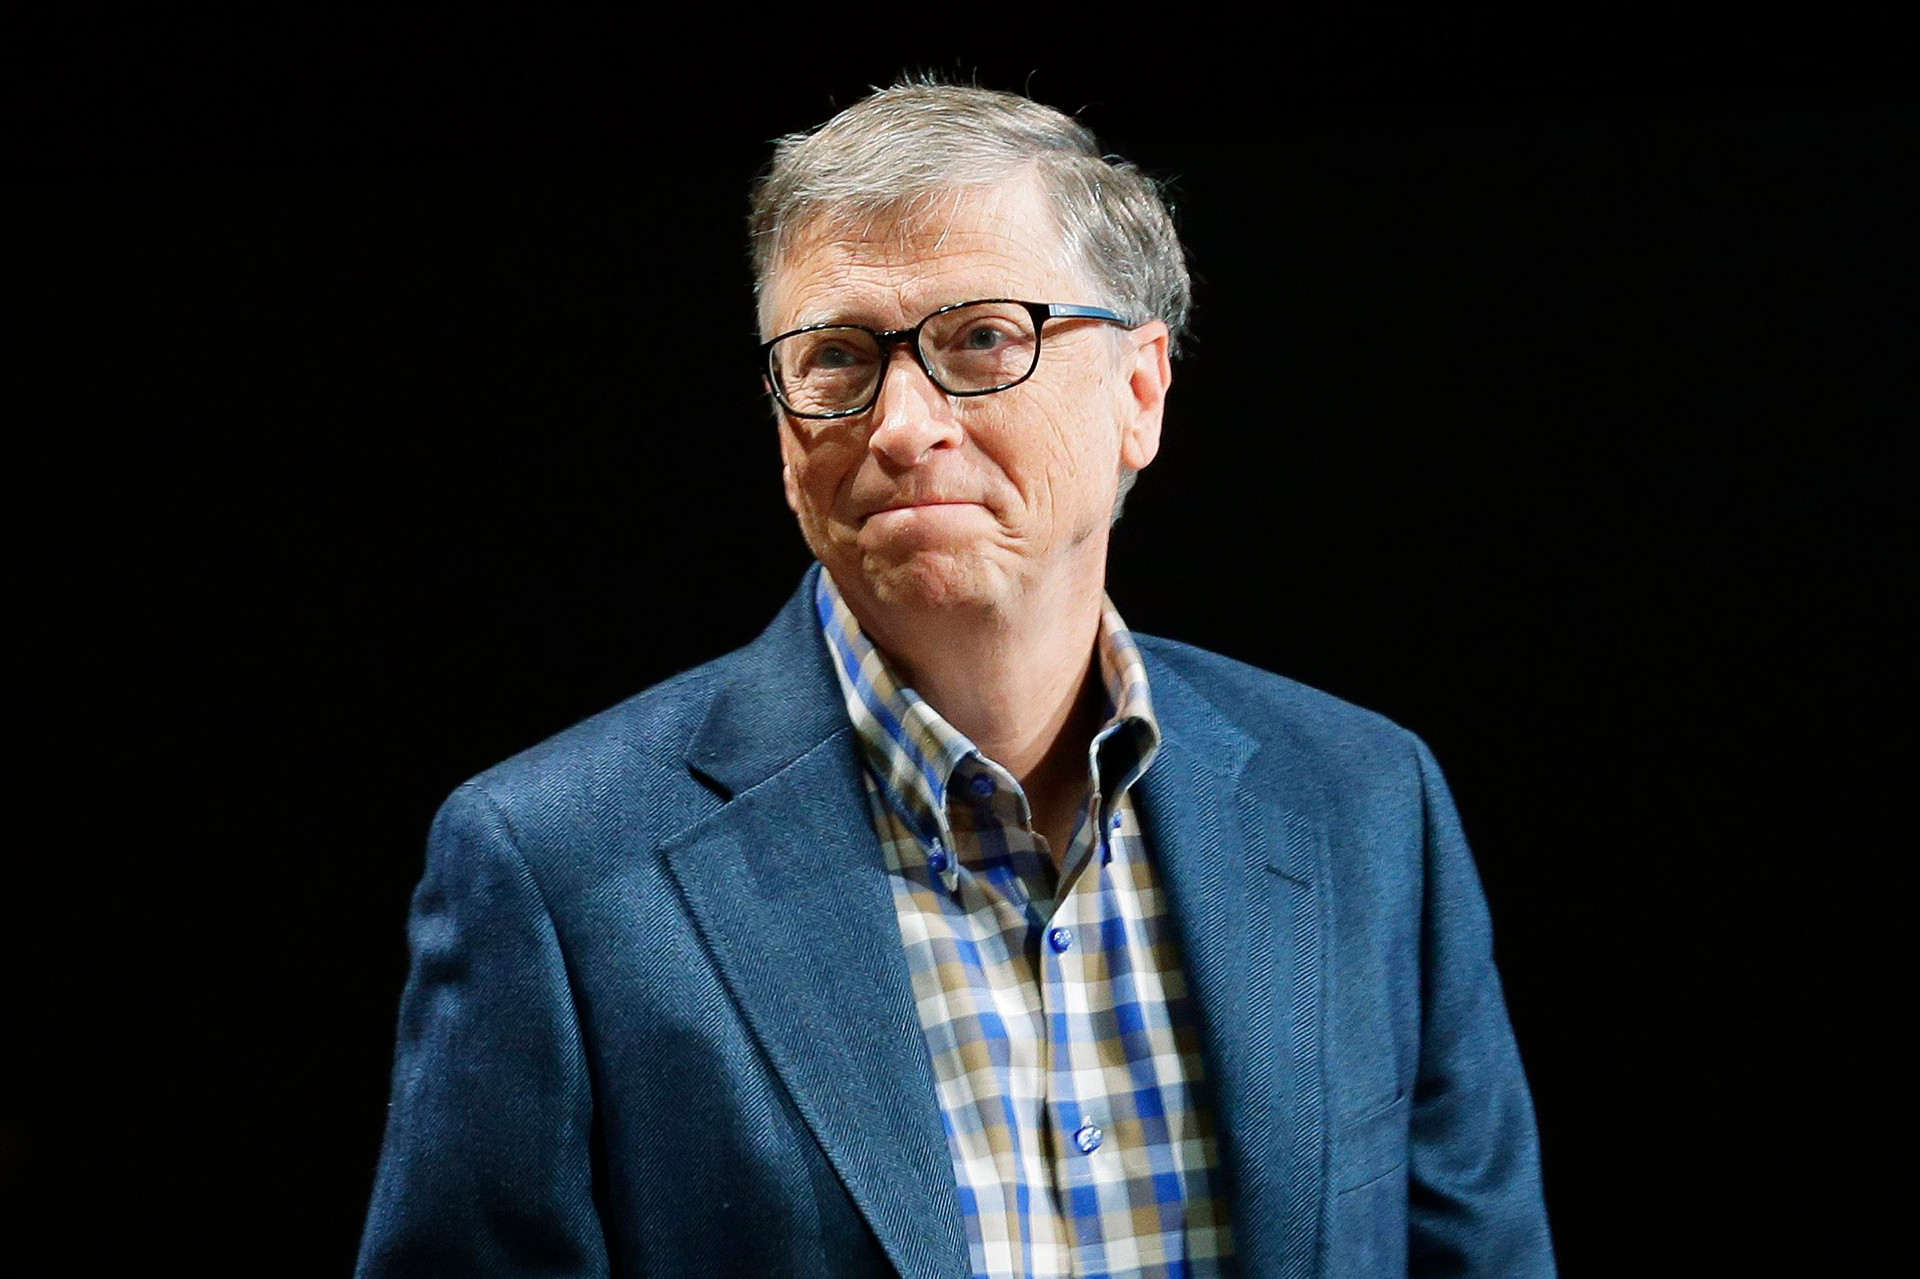 Ngồi trên núi tiền 112 tỷ USD, Bill Gates hối hận muộn màng vì thứ dù là tỷ phú đôla cũng không thể mua được - Ảnh 1.